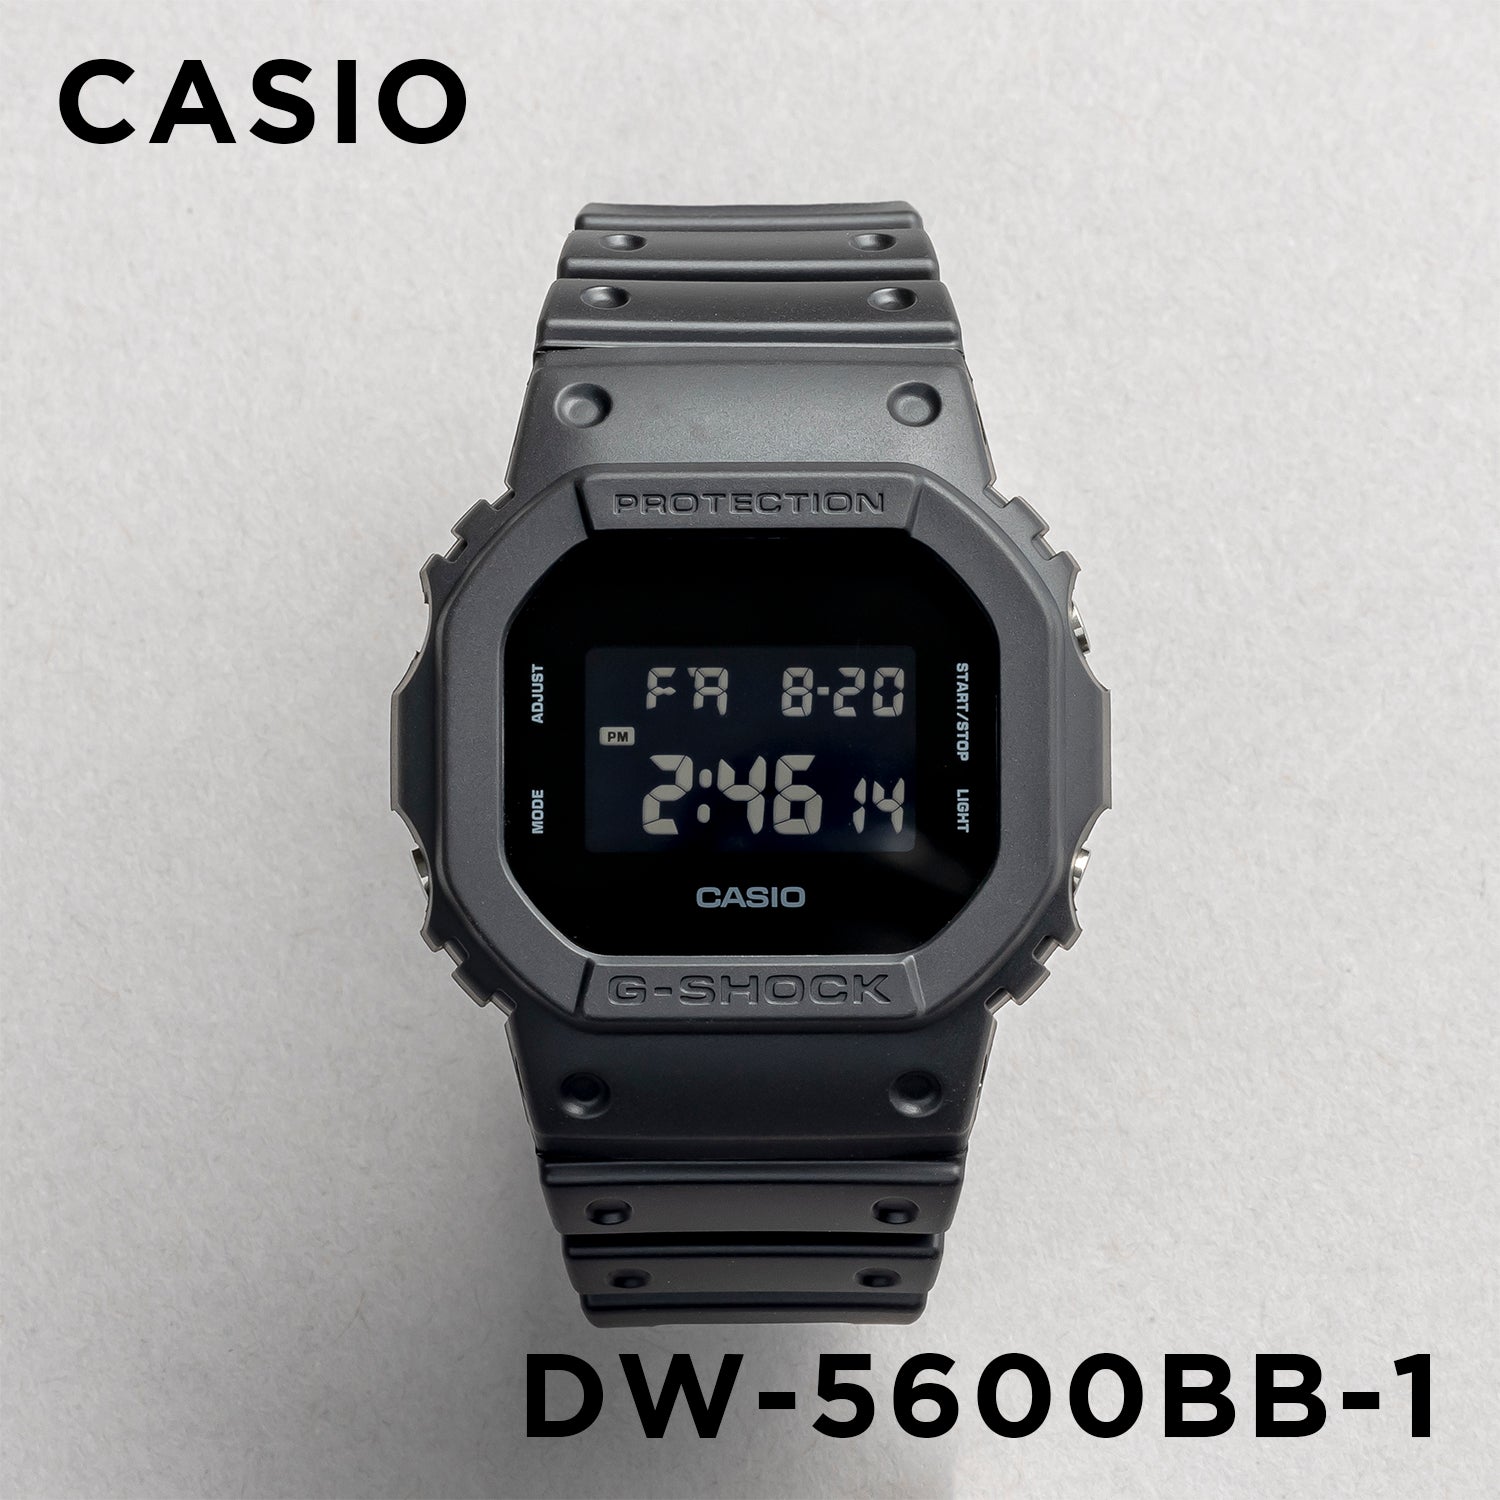 Casio G-shock DW-5600BB-1.